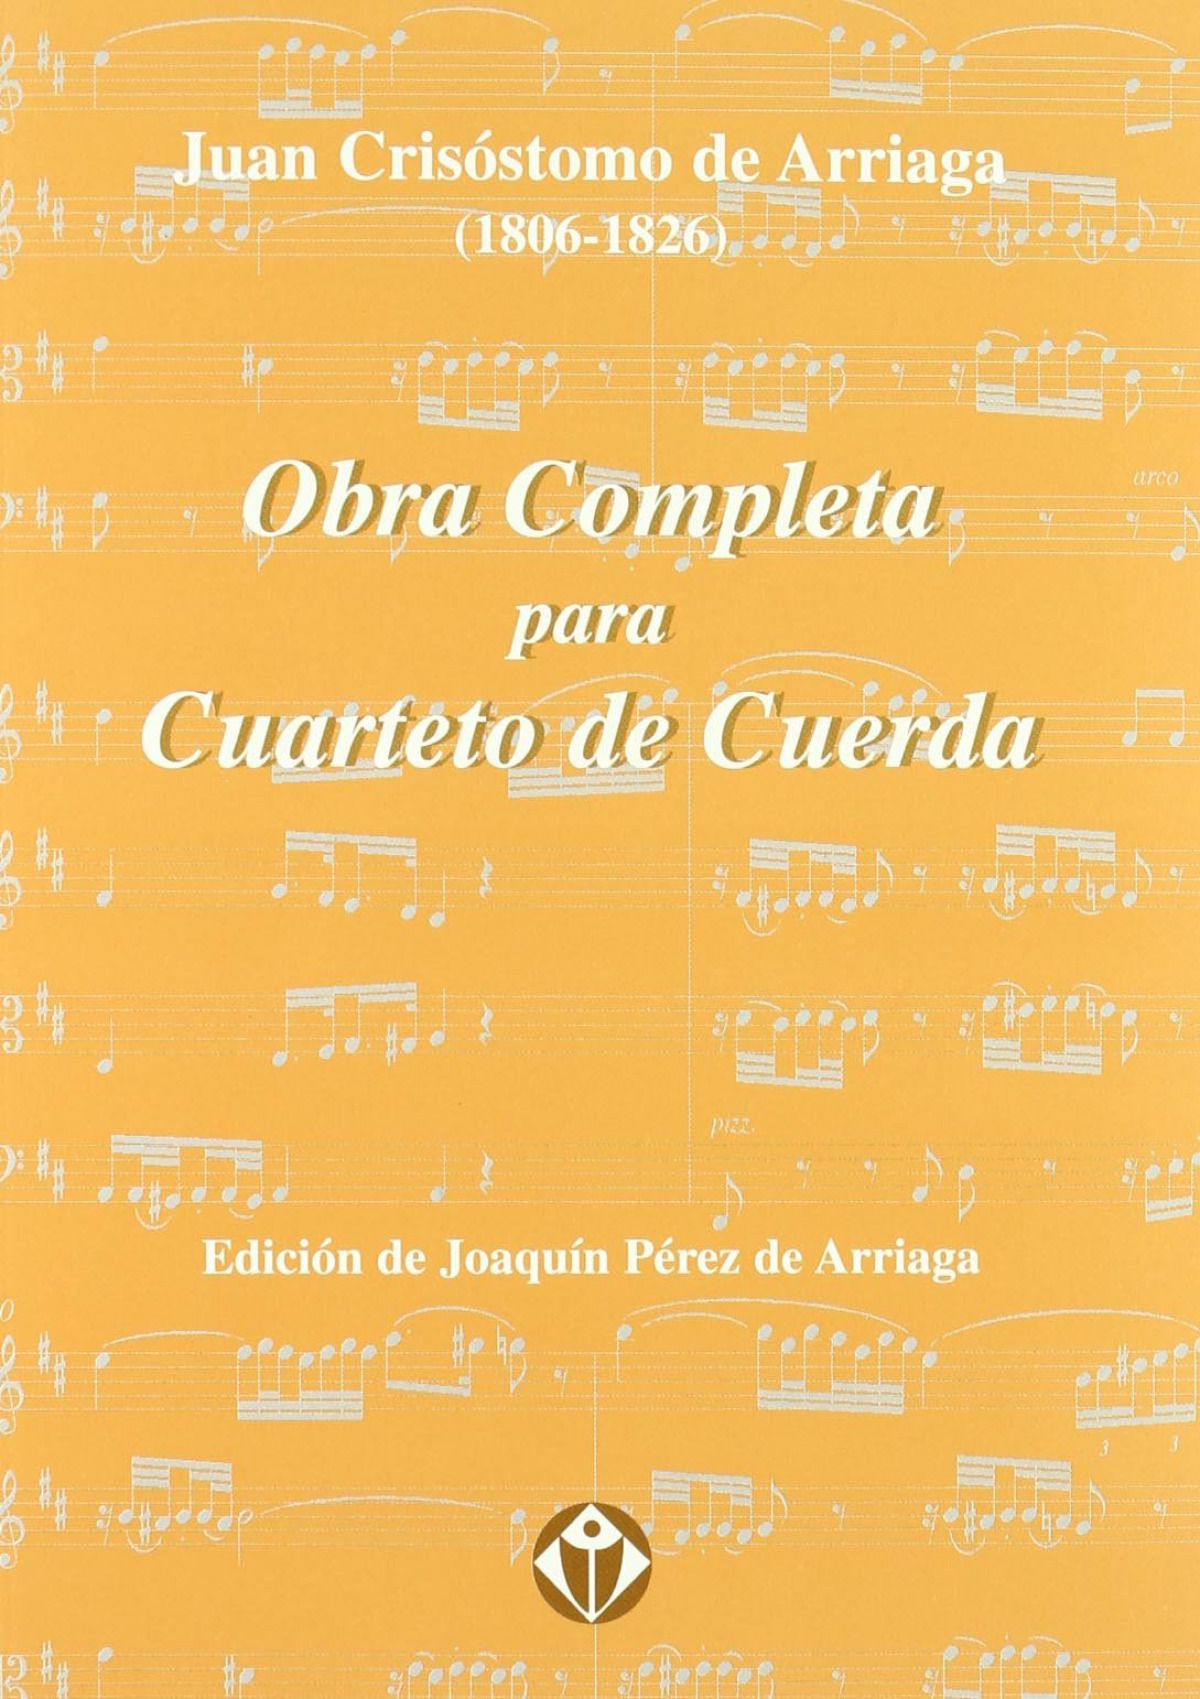 Obra completa para cuarteto cuerda - Crisostomo, Juan